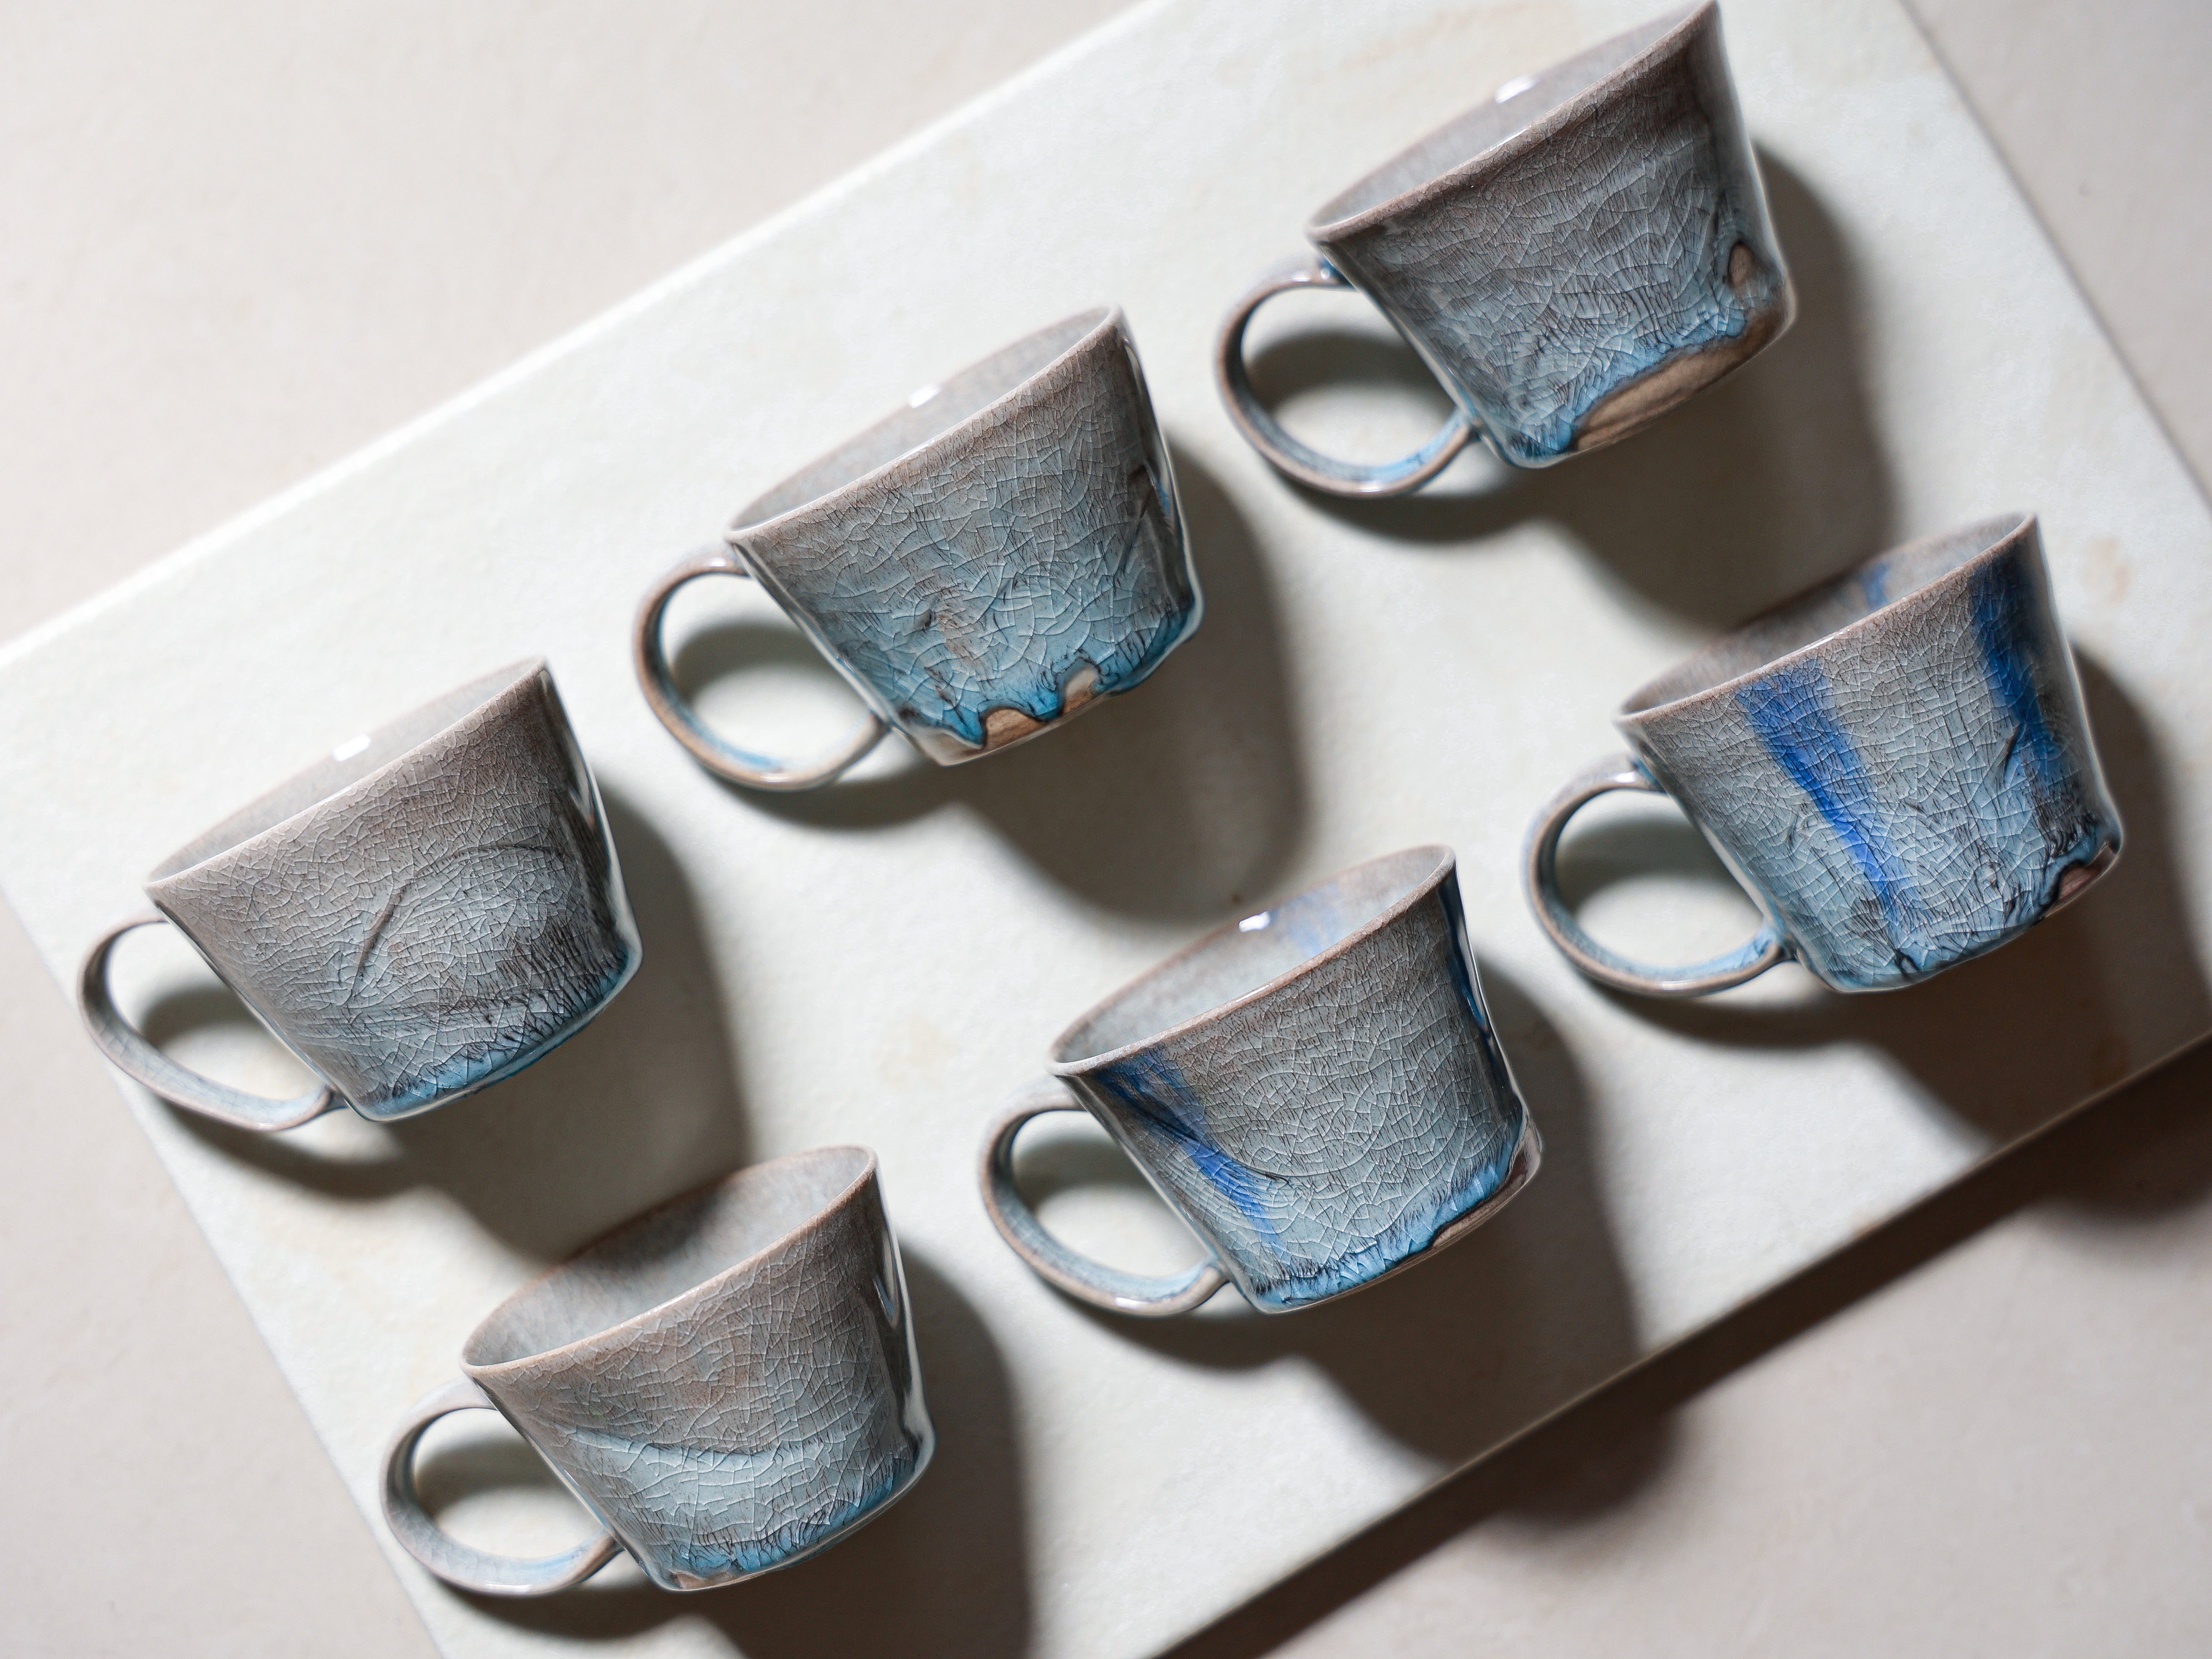 Mini Iceland Blue Mug (Teacup)